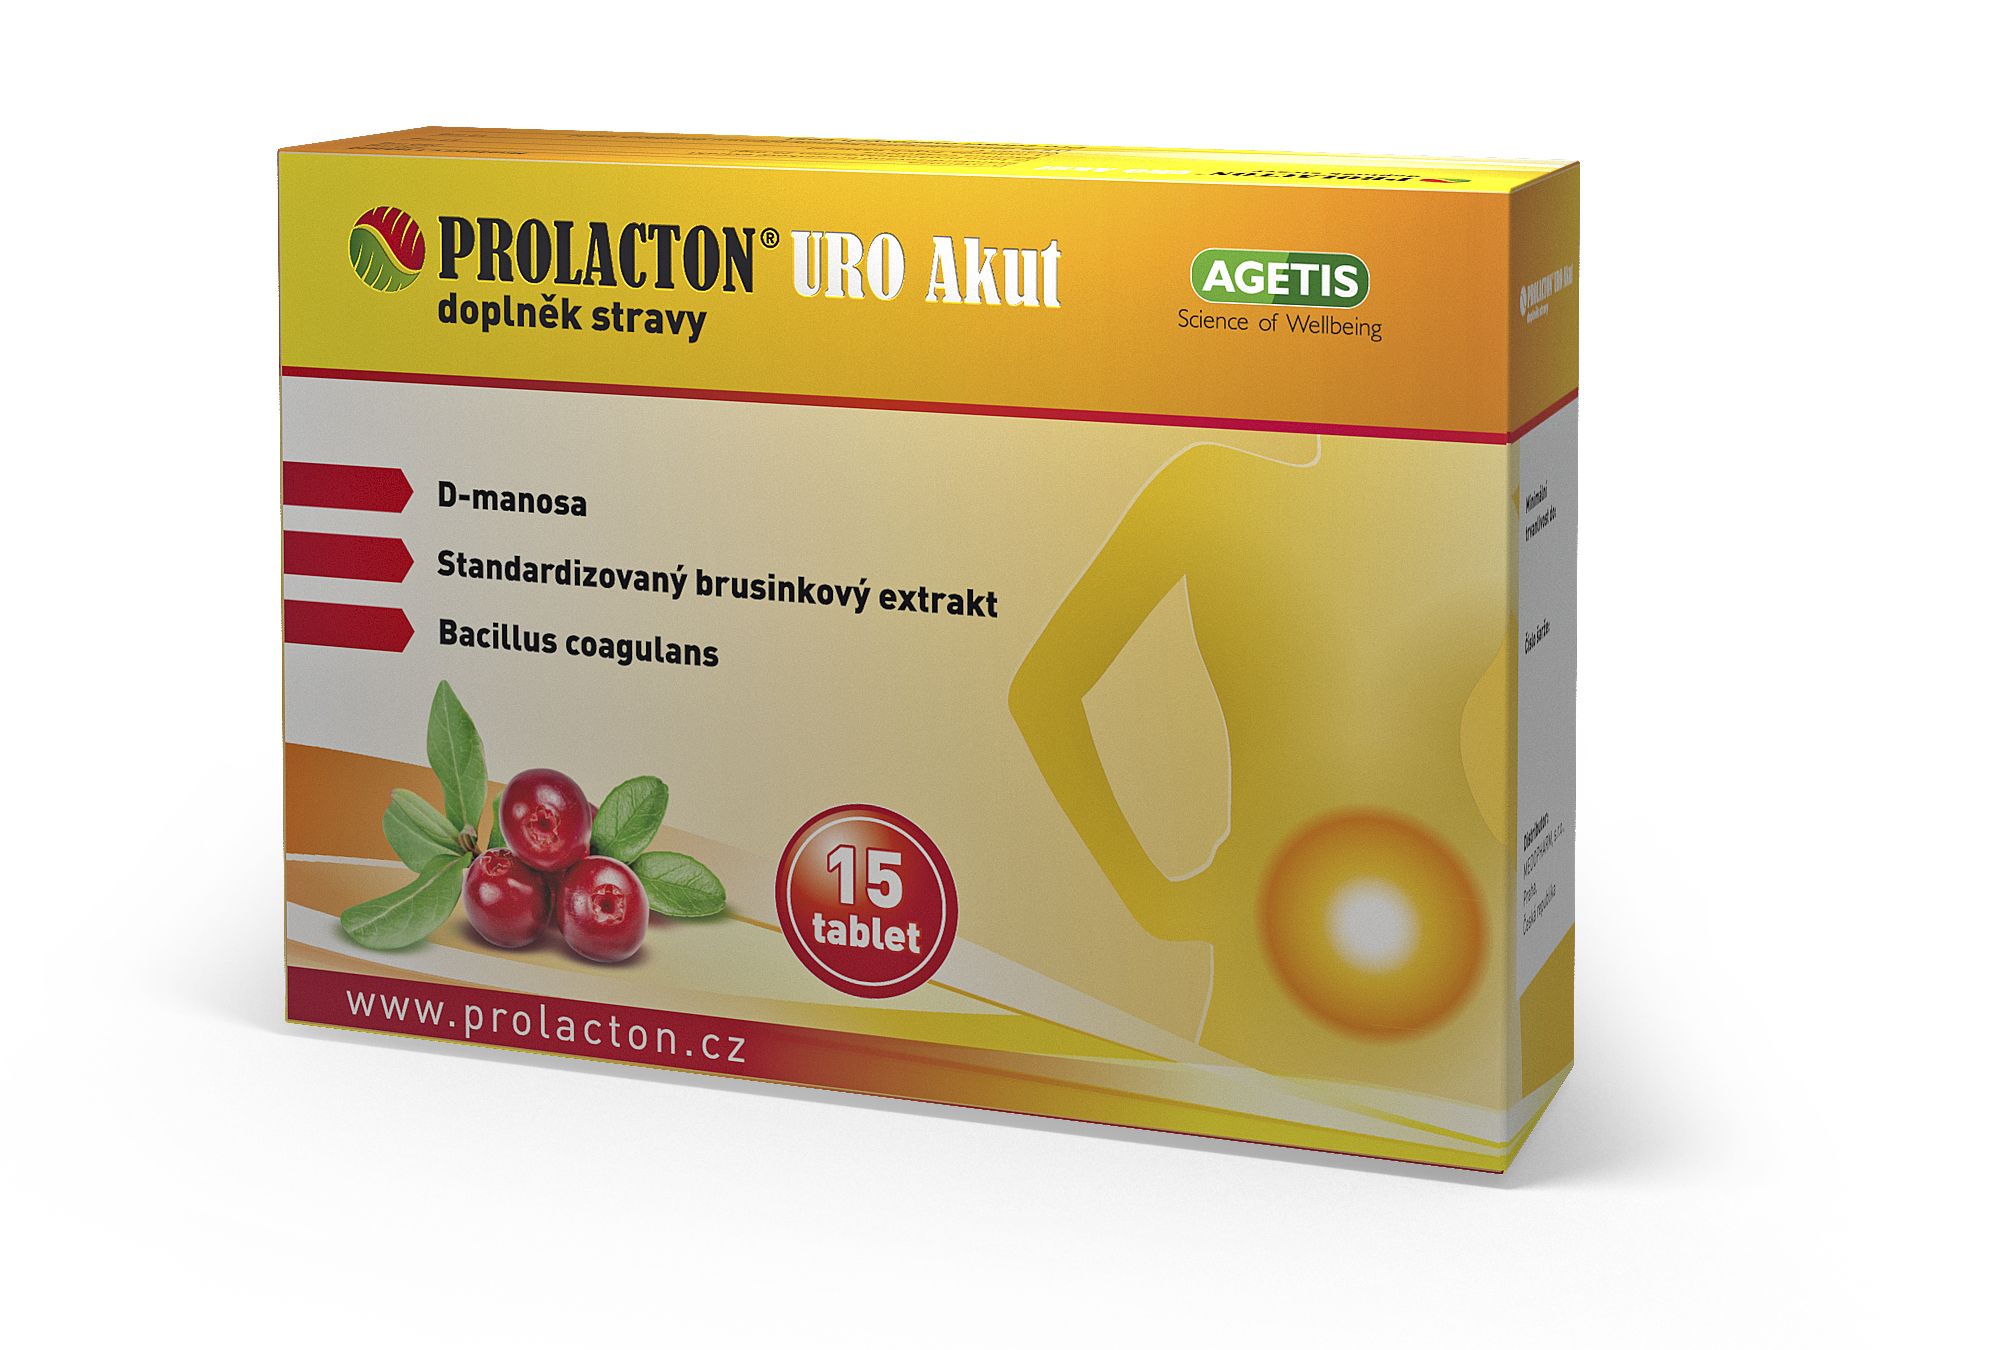 Prolacton URO Akut 15 tablet Prolacton